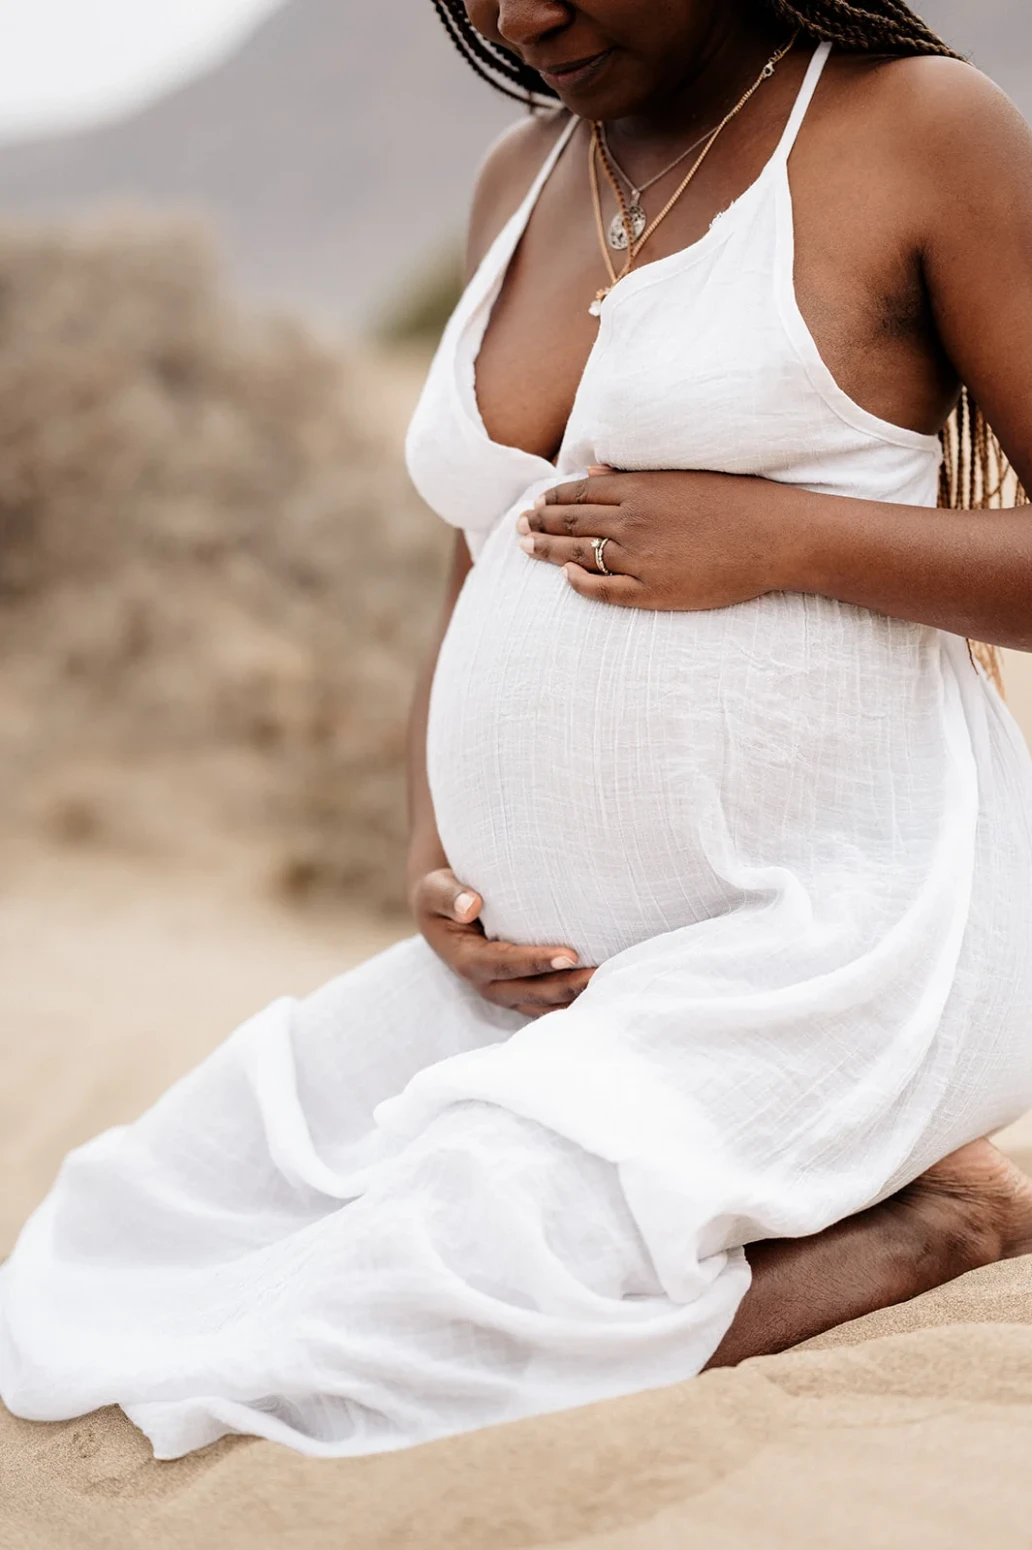 Pregnancy photoshoot in Tenerife